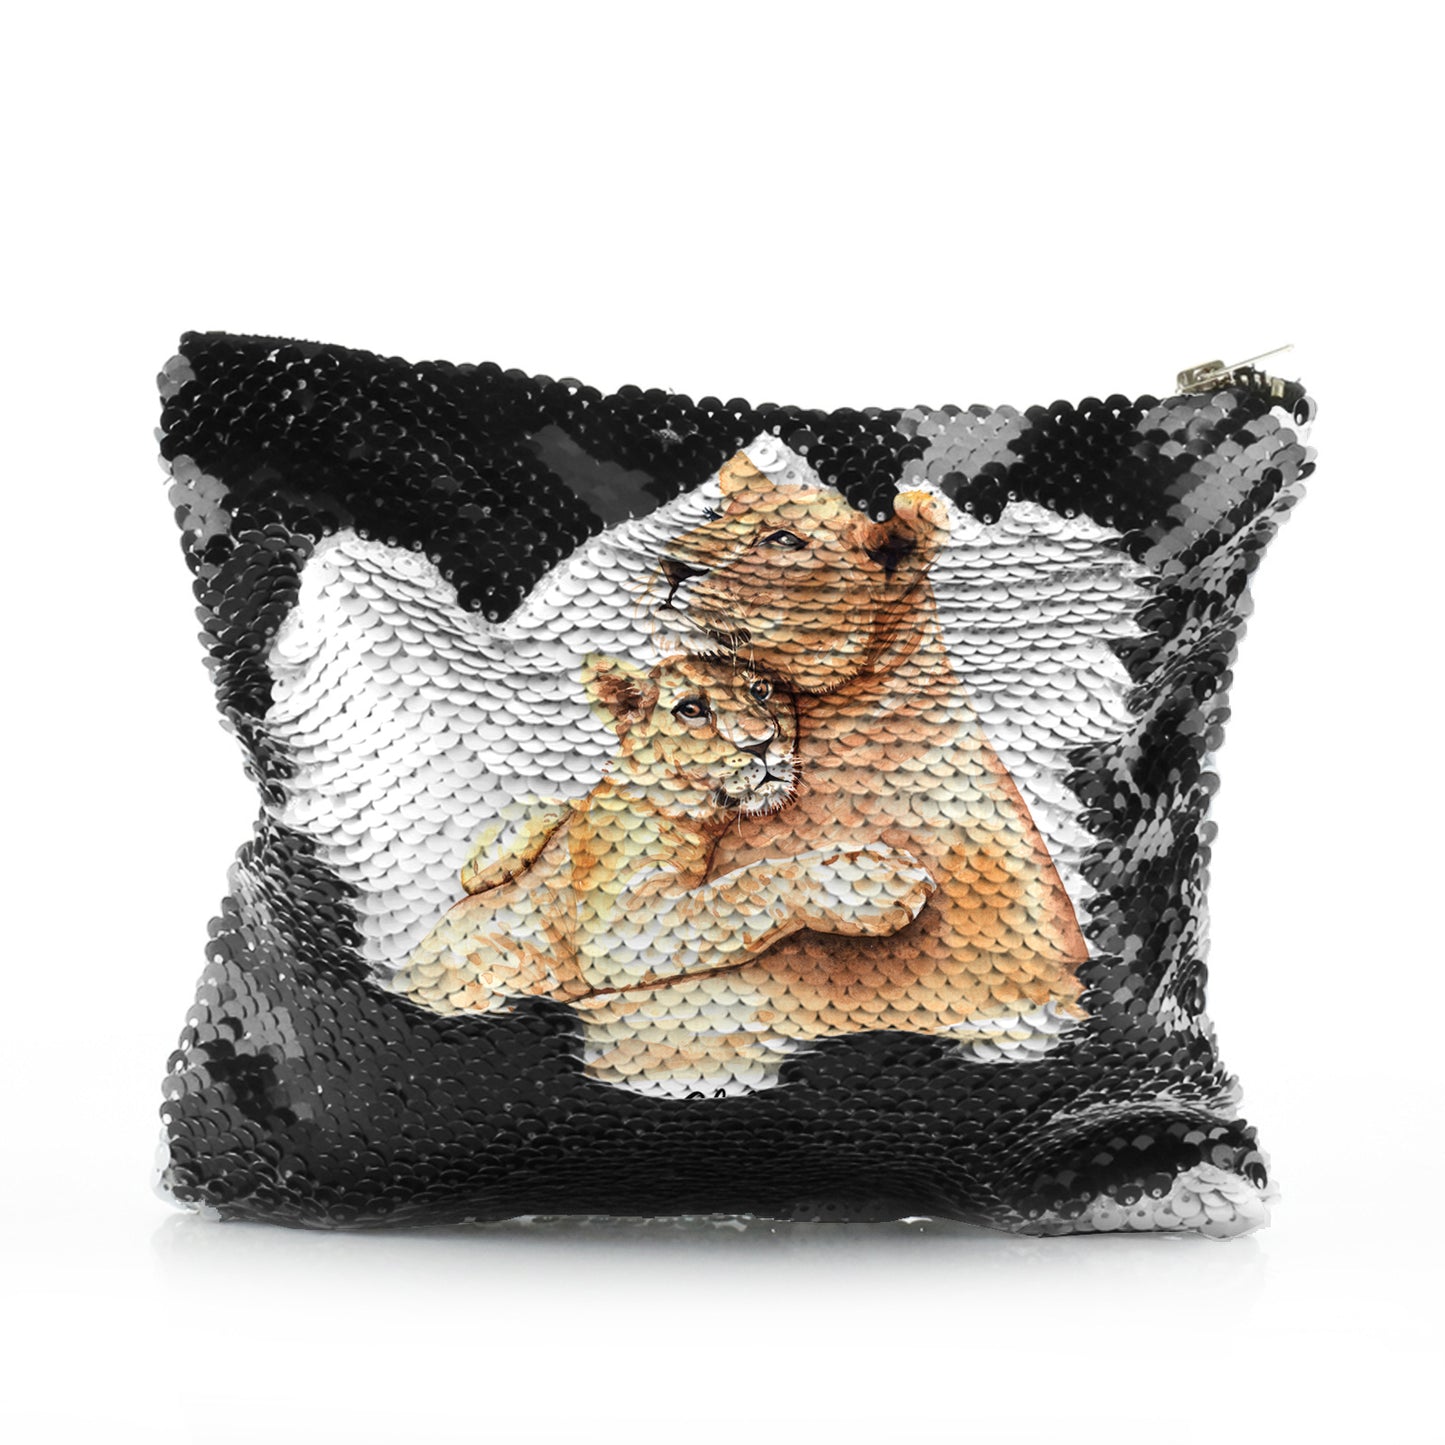 Personalisierte Pailletten-Reißverschlusstasche mit Begrüßungstext und umarmenden Löwenbabys